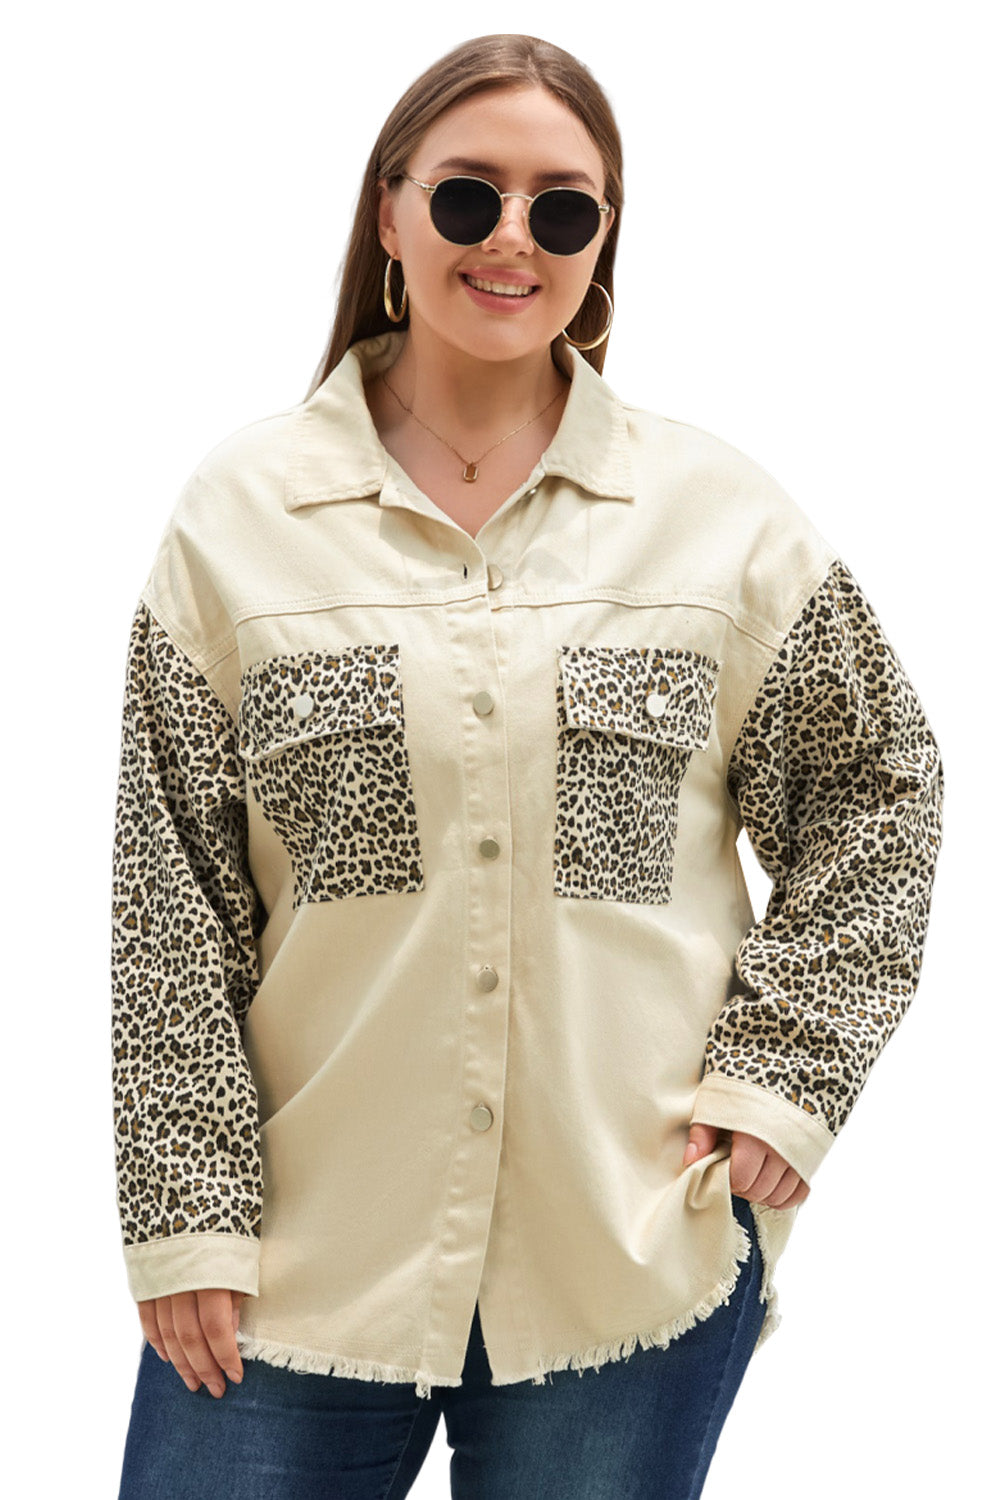 Apricot velika traper jakna s leopard rukavima s neobrađenim porubom